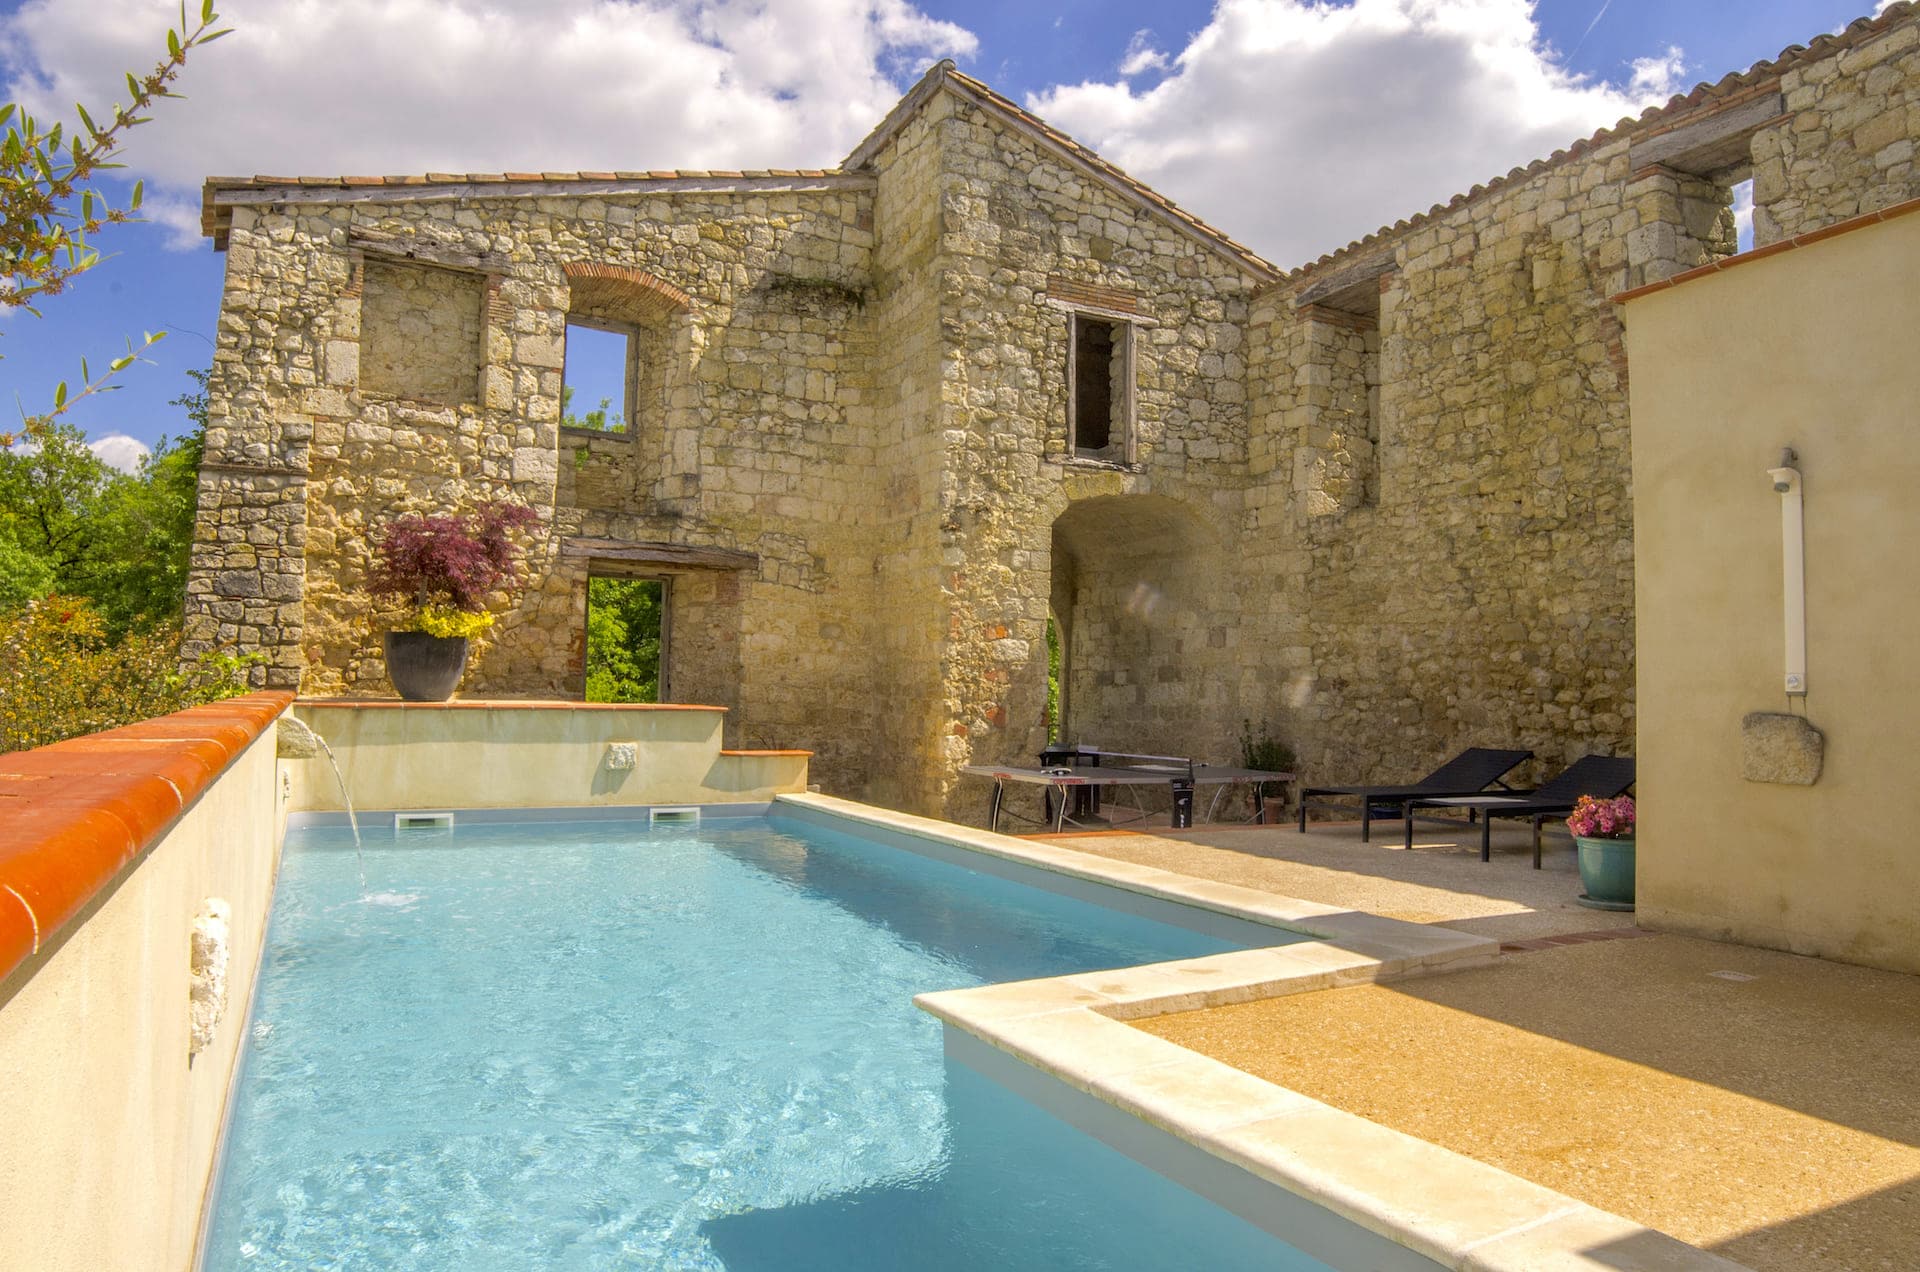 Grand gite de charme avec piscine chauffée entourée des murs ancien datant du 13ème siècle